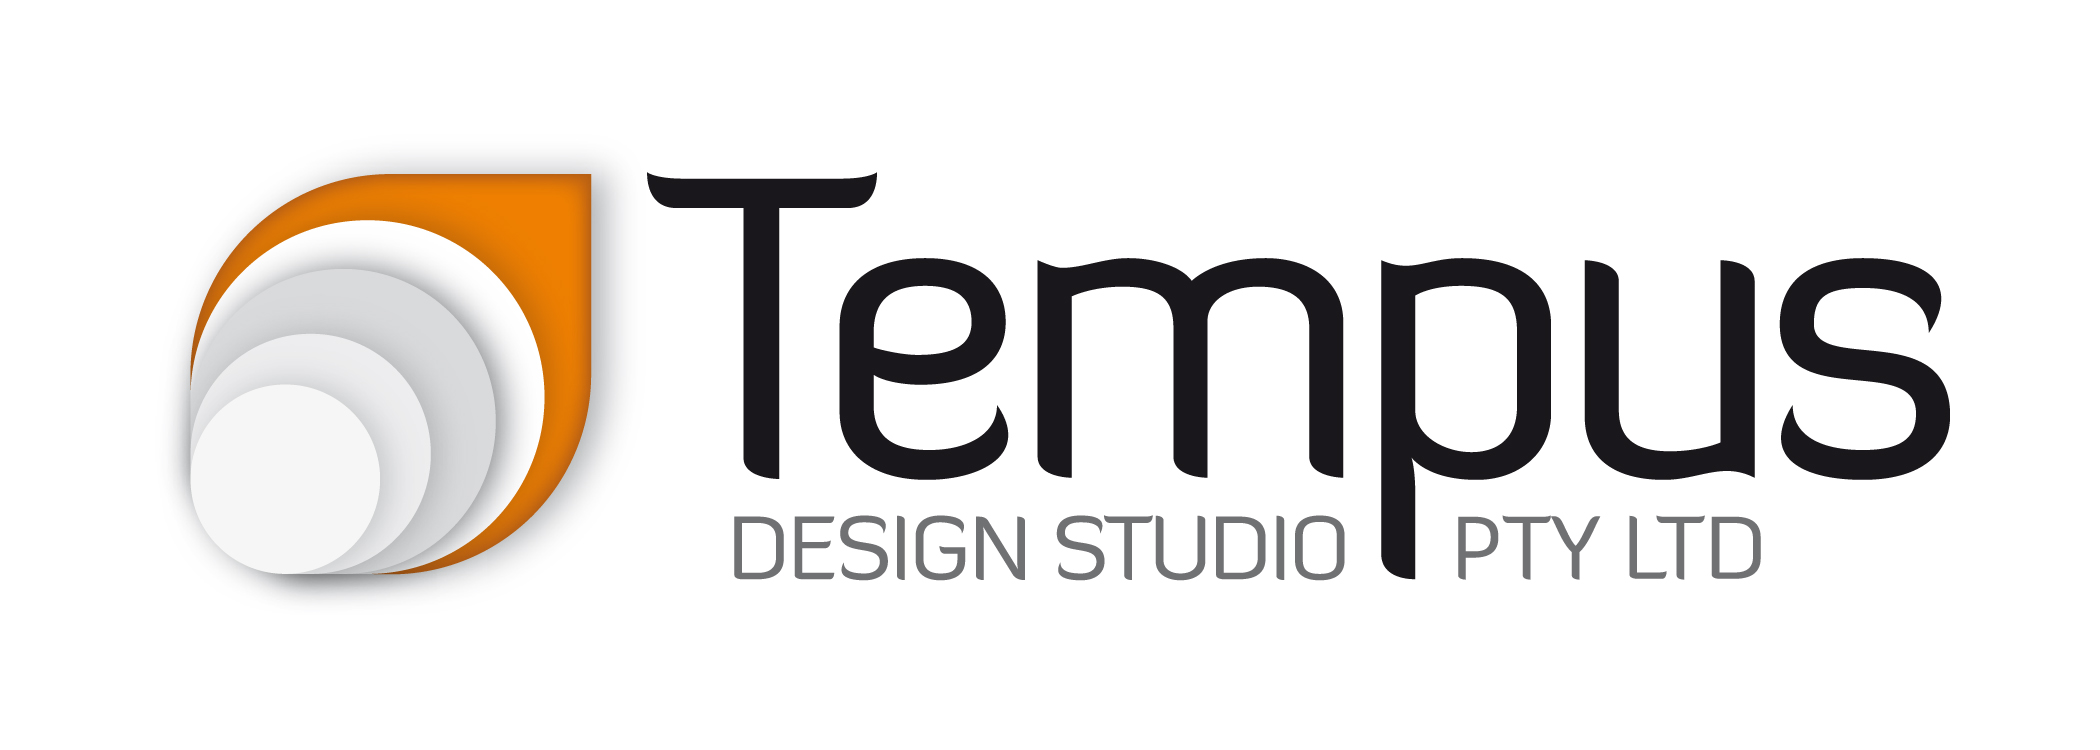 tempus-design-studio